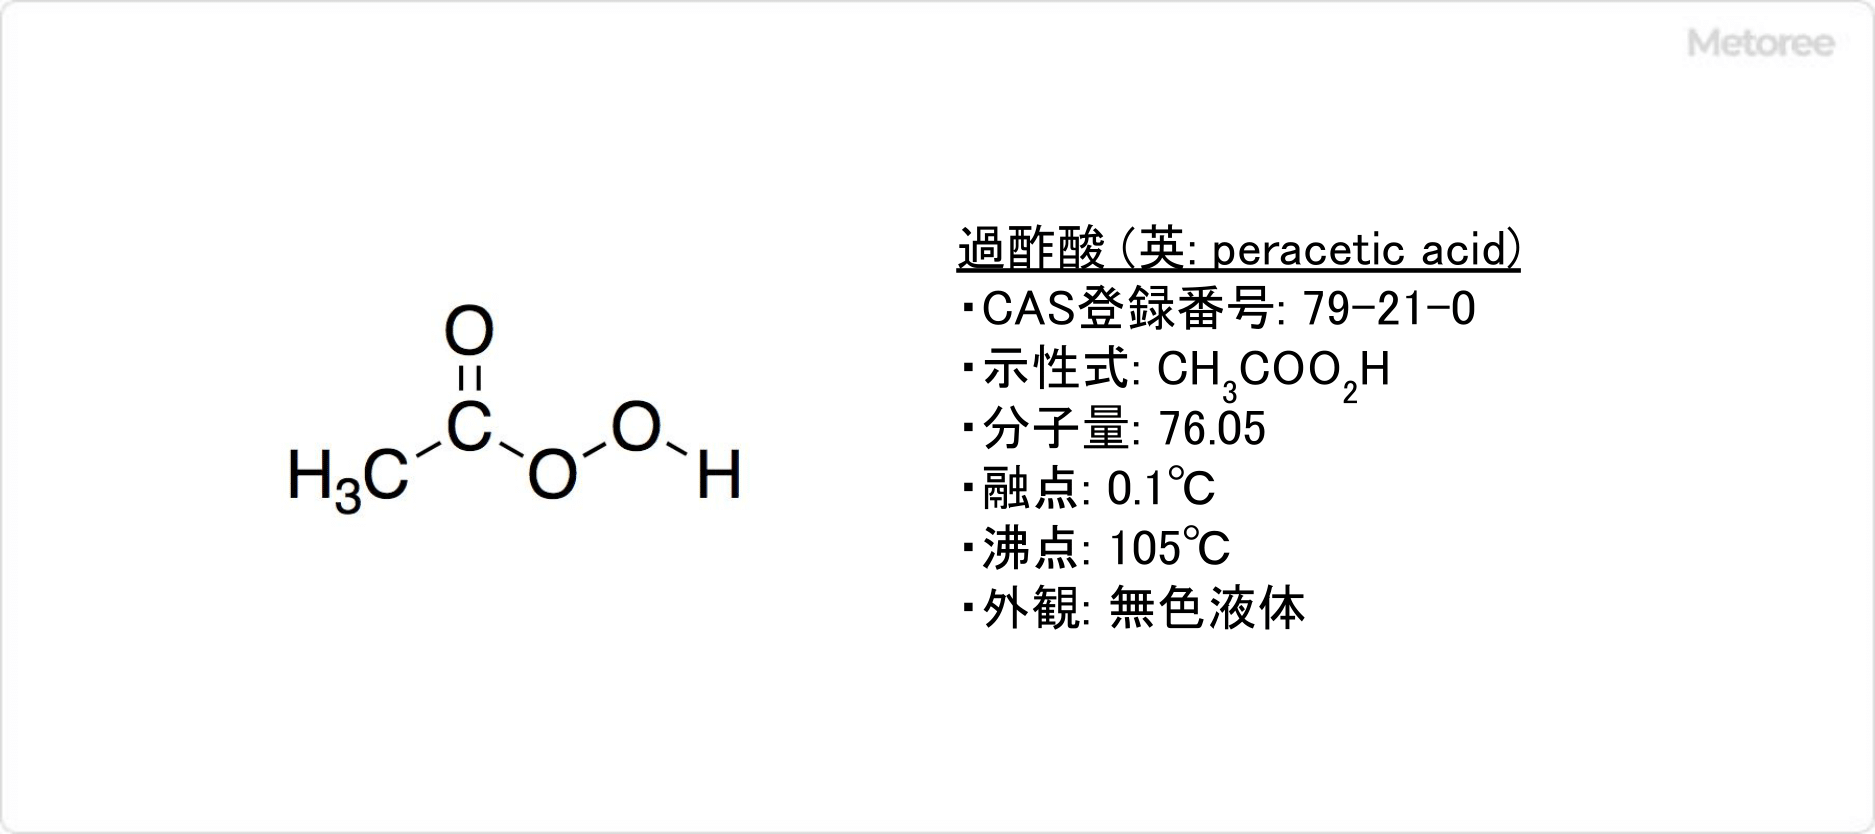 過酢酸の基本情報